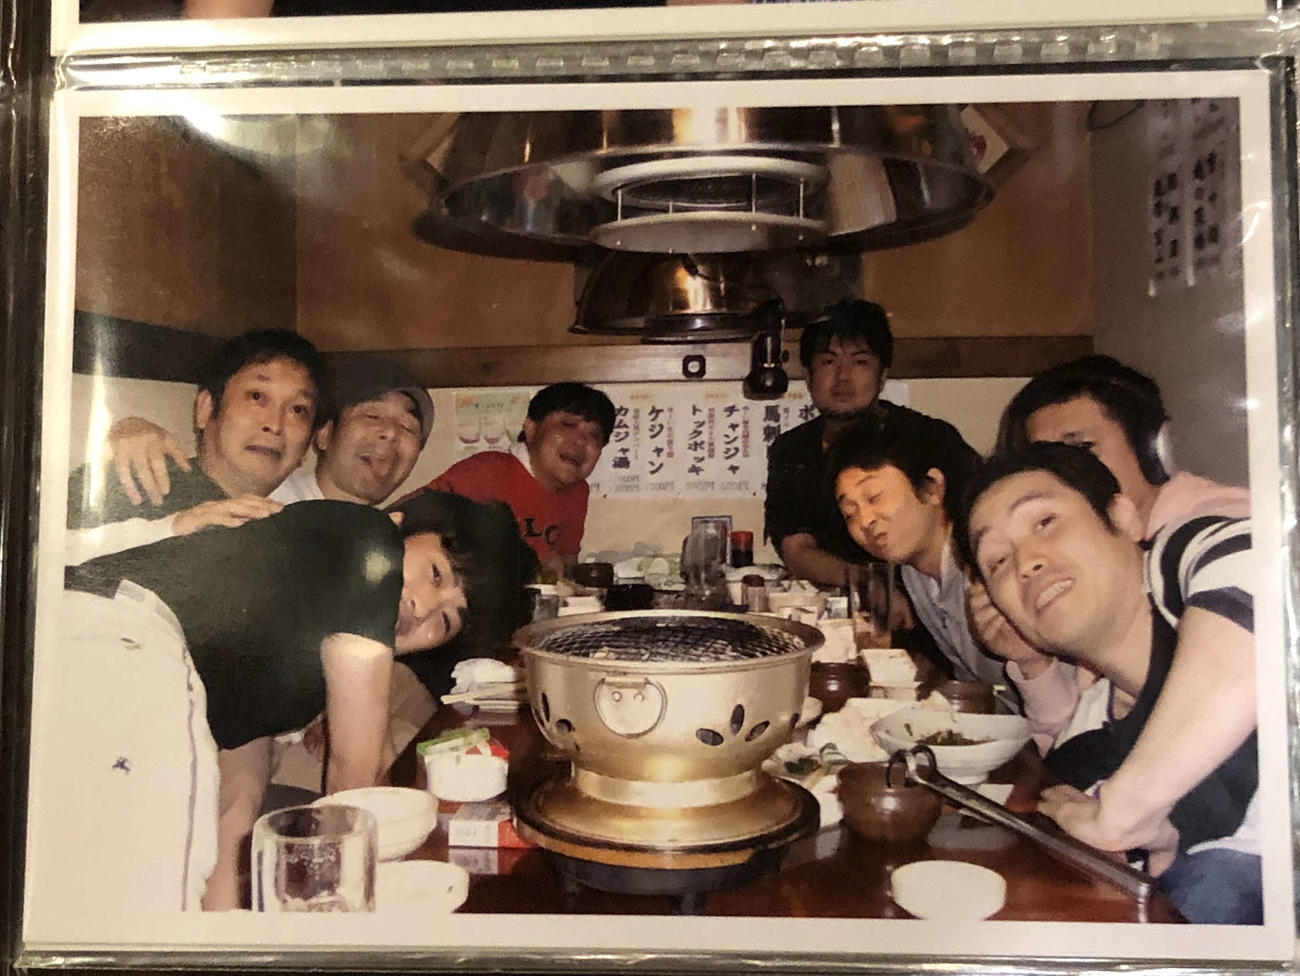 上島竜兵さん（左から4人目）がいきつけだった韓国料理店「オジャンドン」で写真に納まる「竜兵会」メンバー